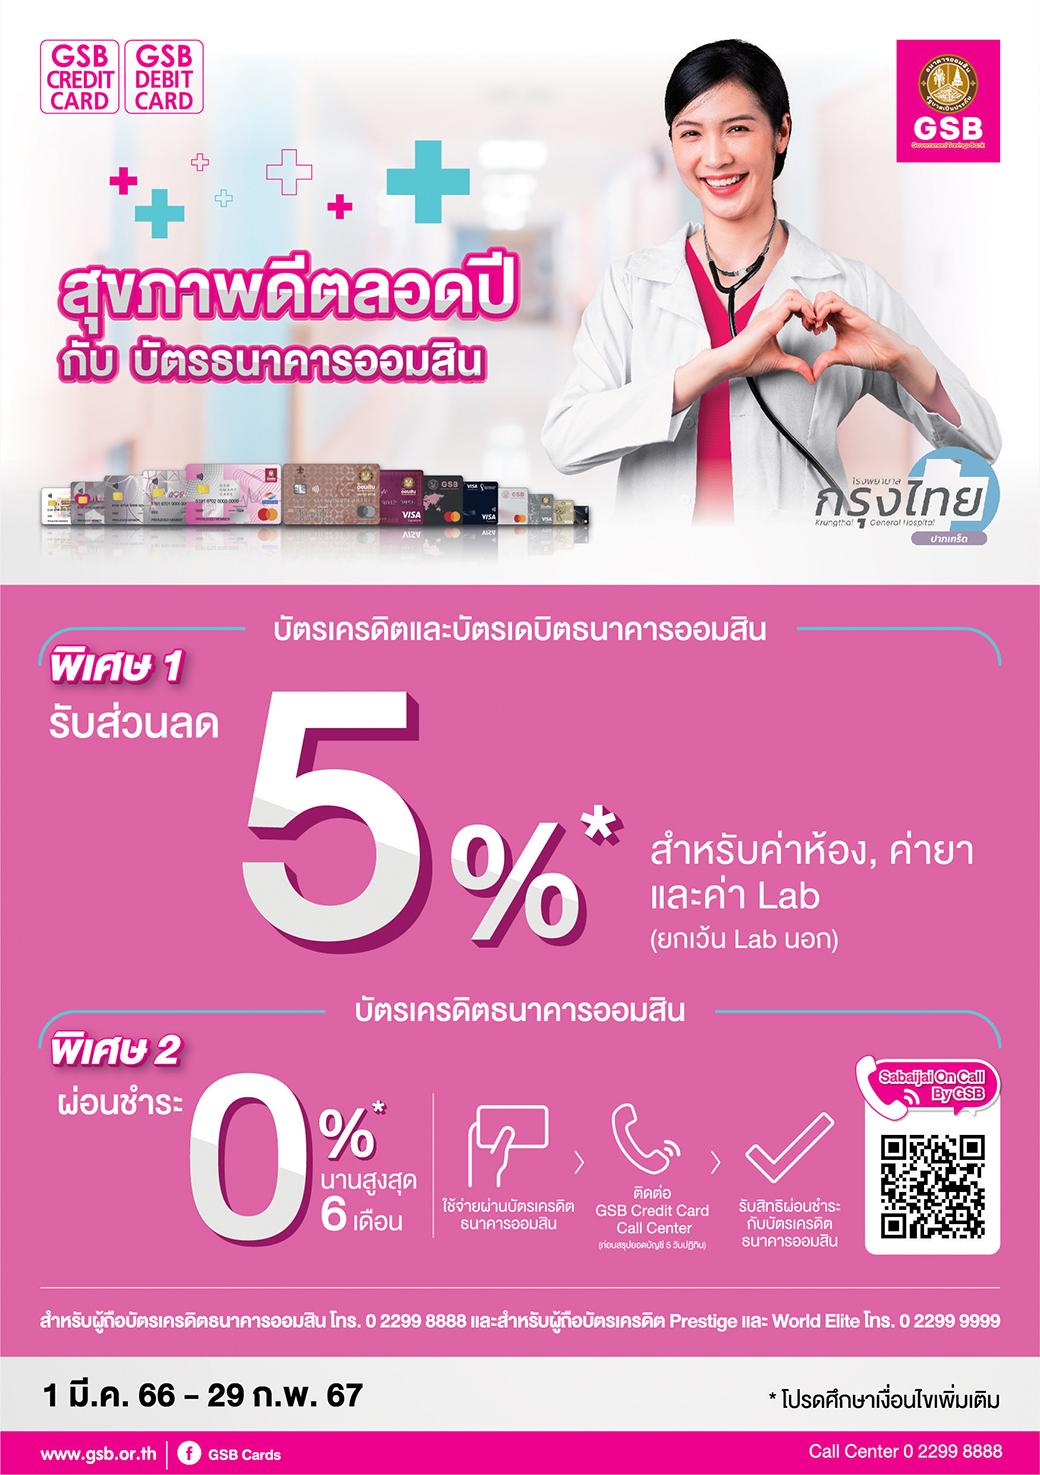 75.โรงพยาบาลกรุงไทย ปากเกร็ด